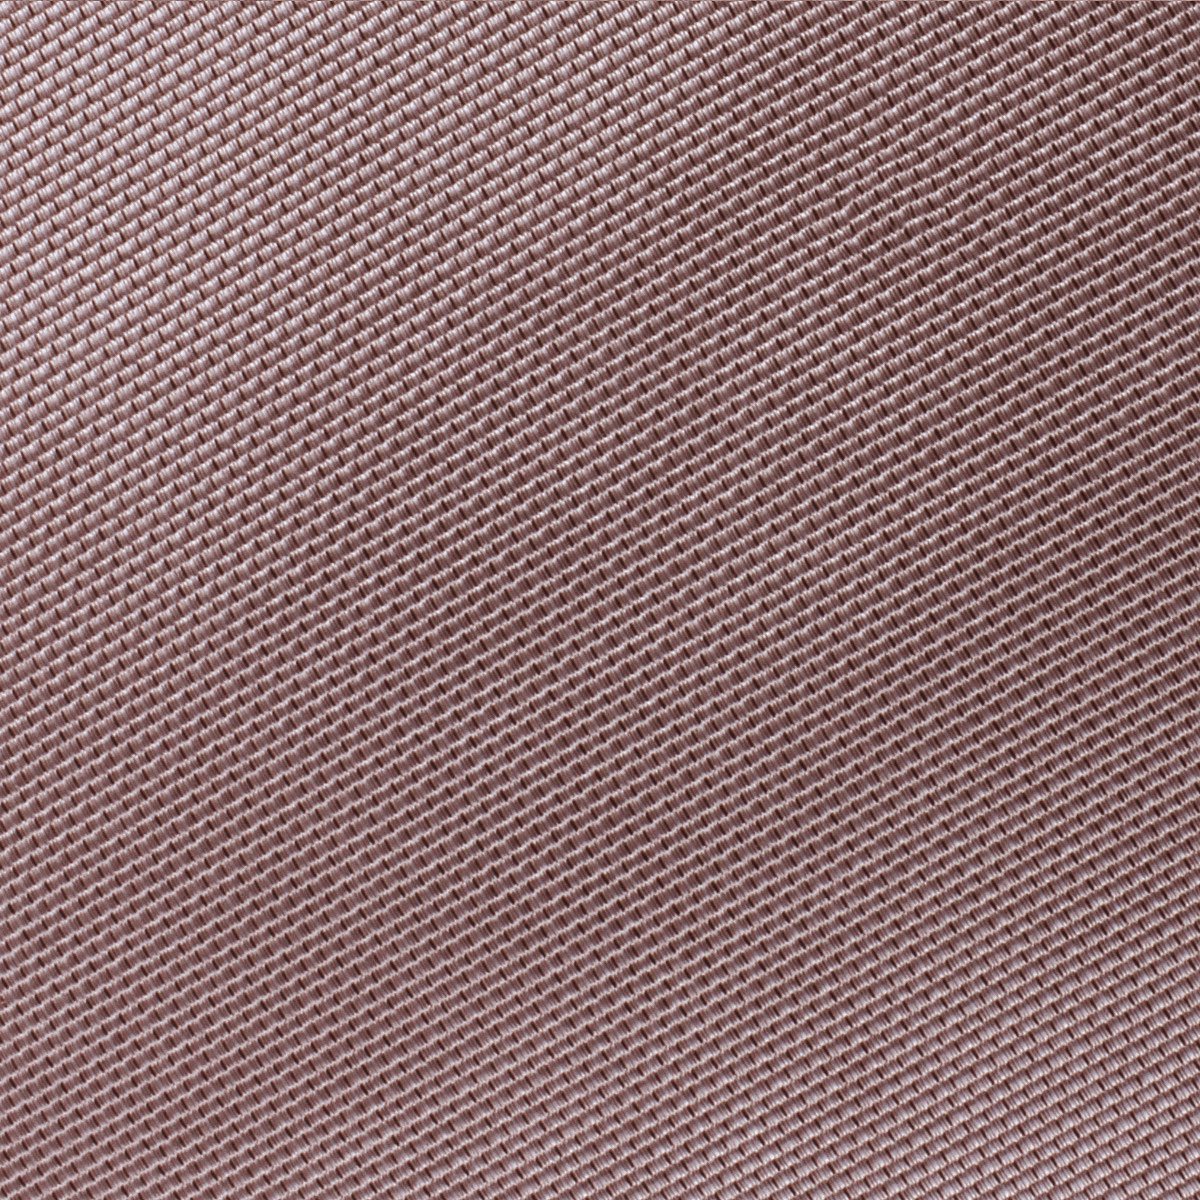 Dusty Mauve Quartz Weave Pocket Square Fabric